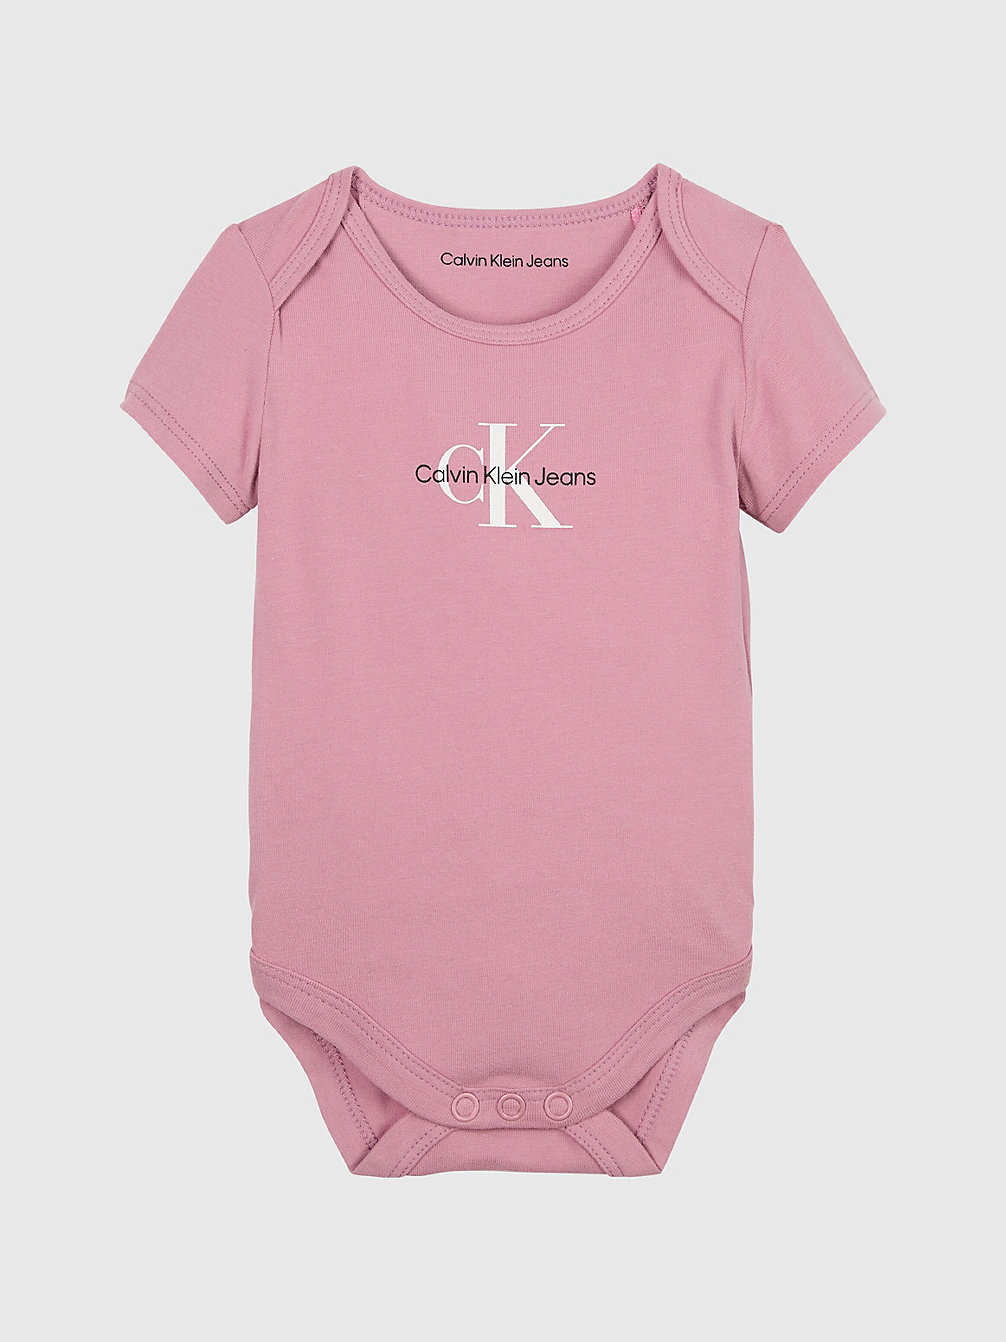 FOXGLOVE > Newborn-Bodysuit Met Logo > undefined newborn - Calvin Klein